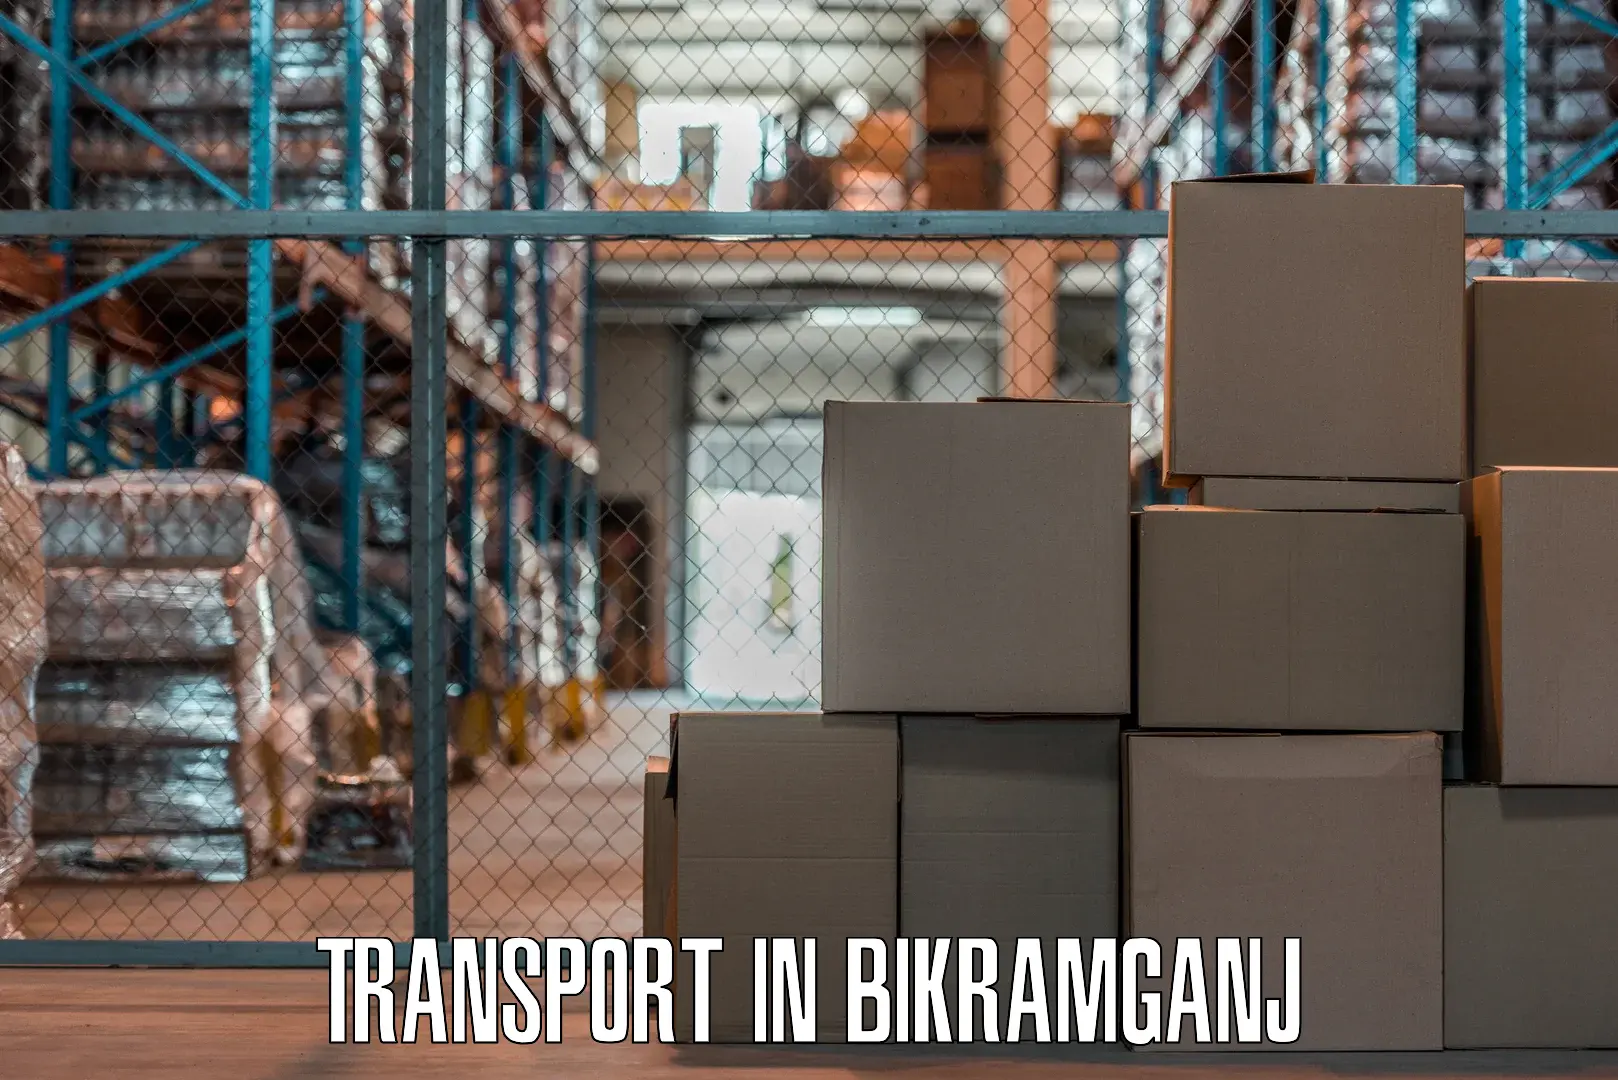 Land transport services in Bikramganj